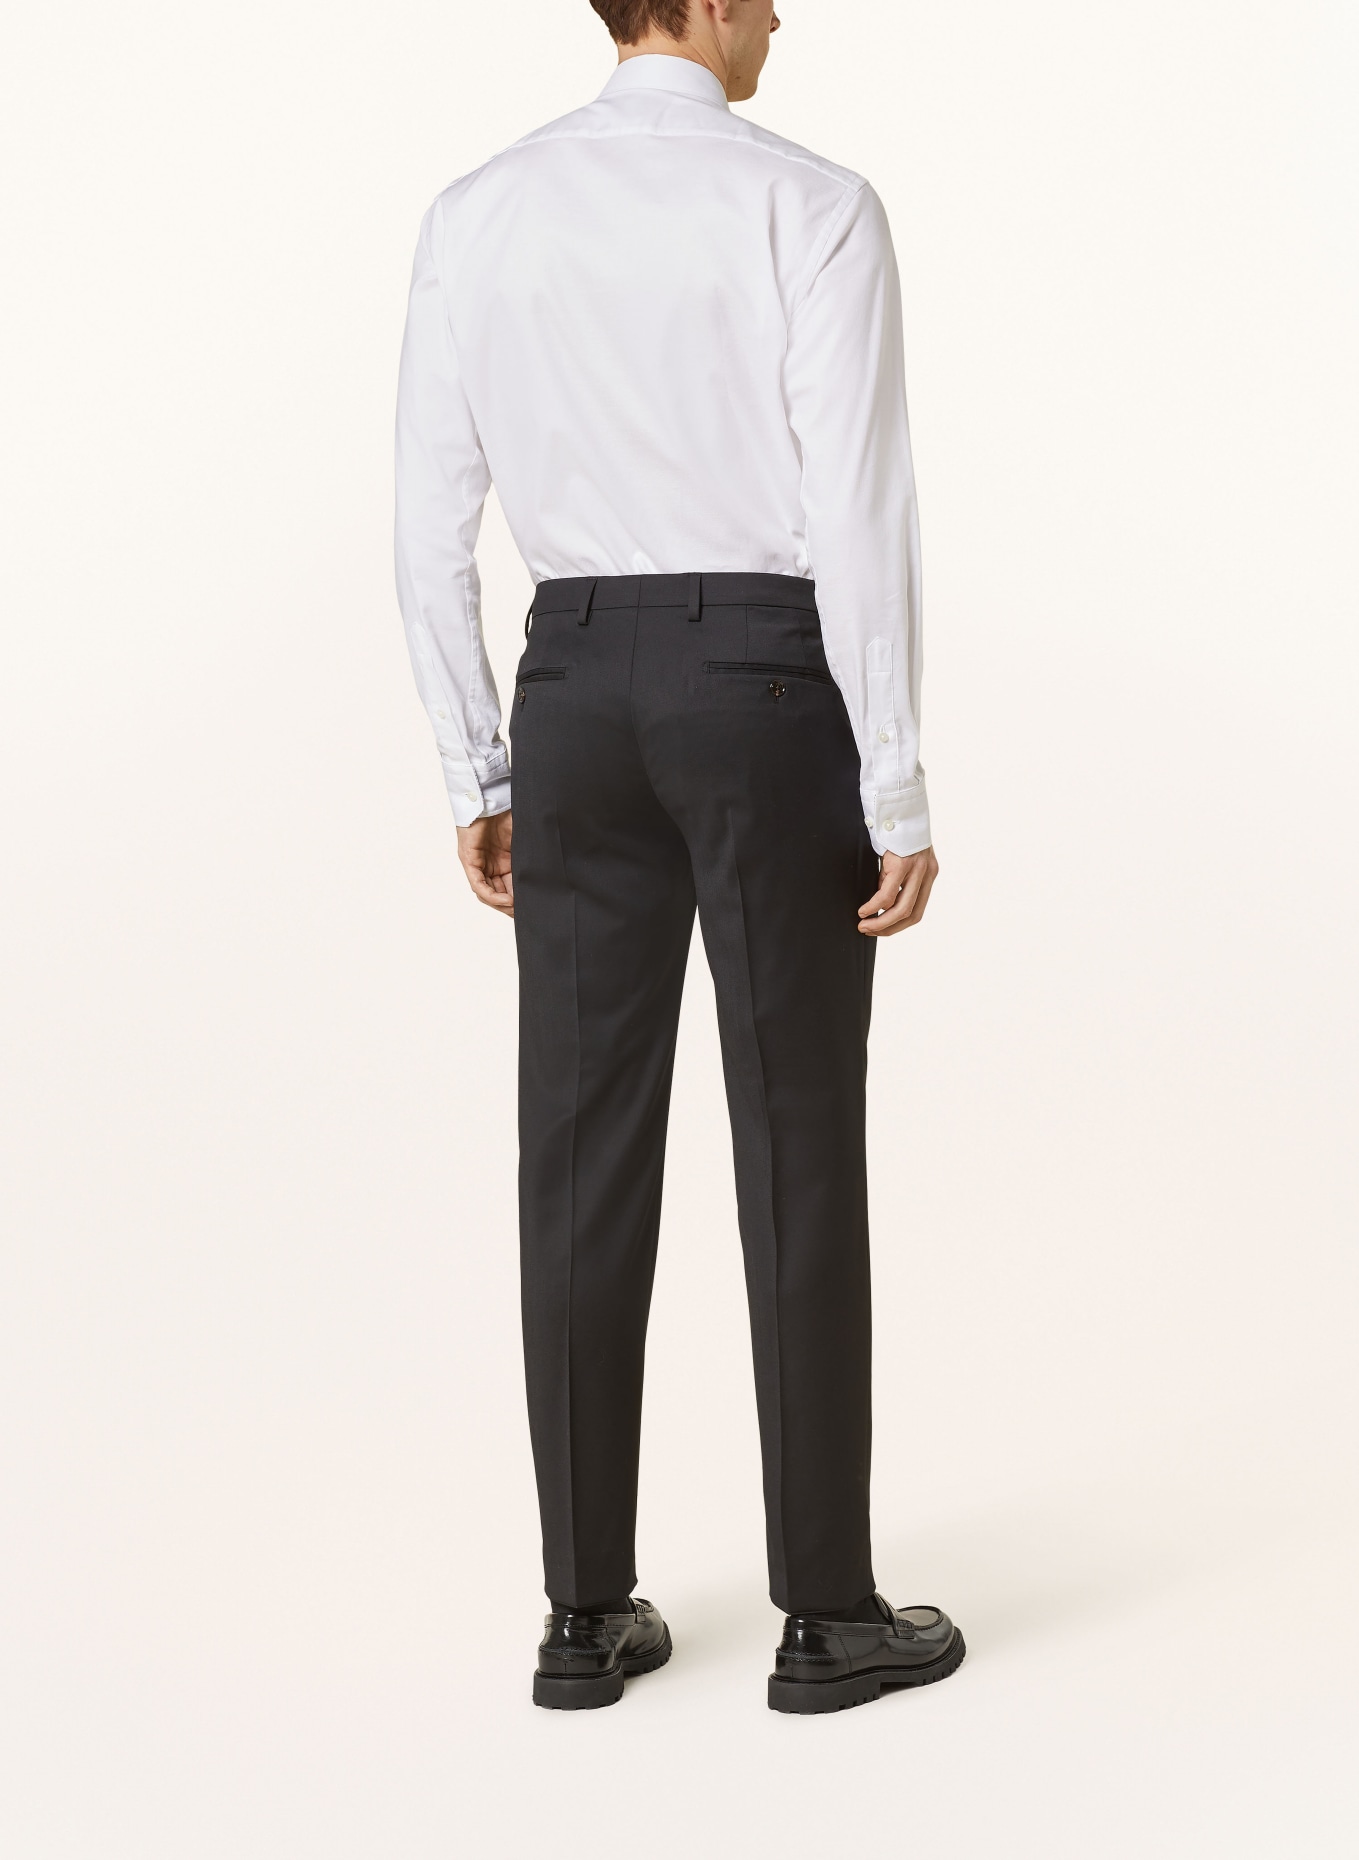 JOOP! Anzughose Slim Fit, Farbe: 001 Black                      001 (Bild 4)